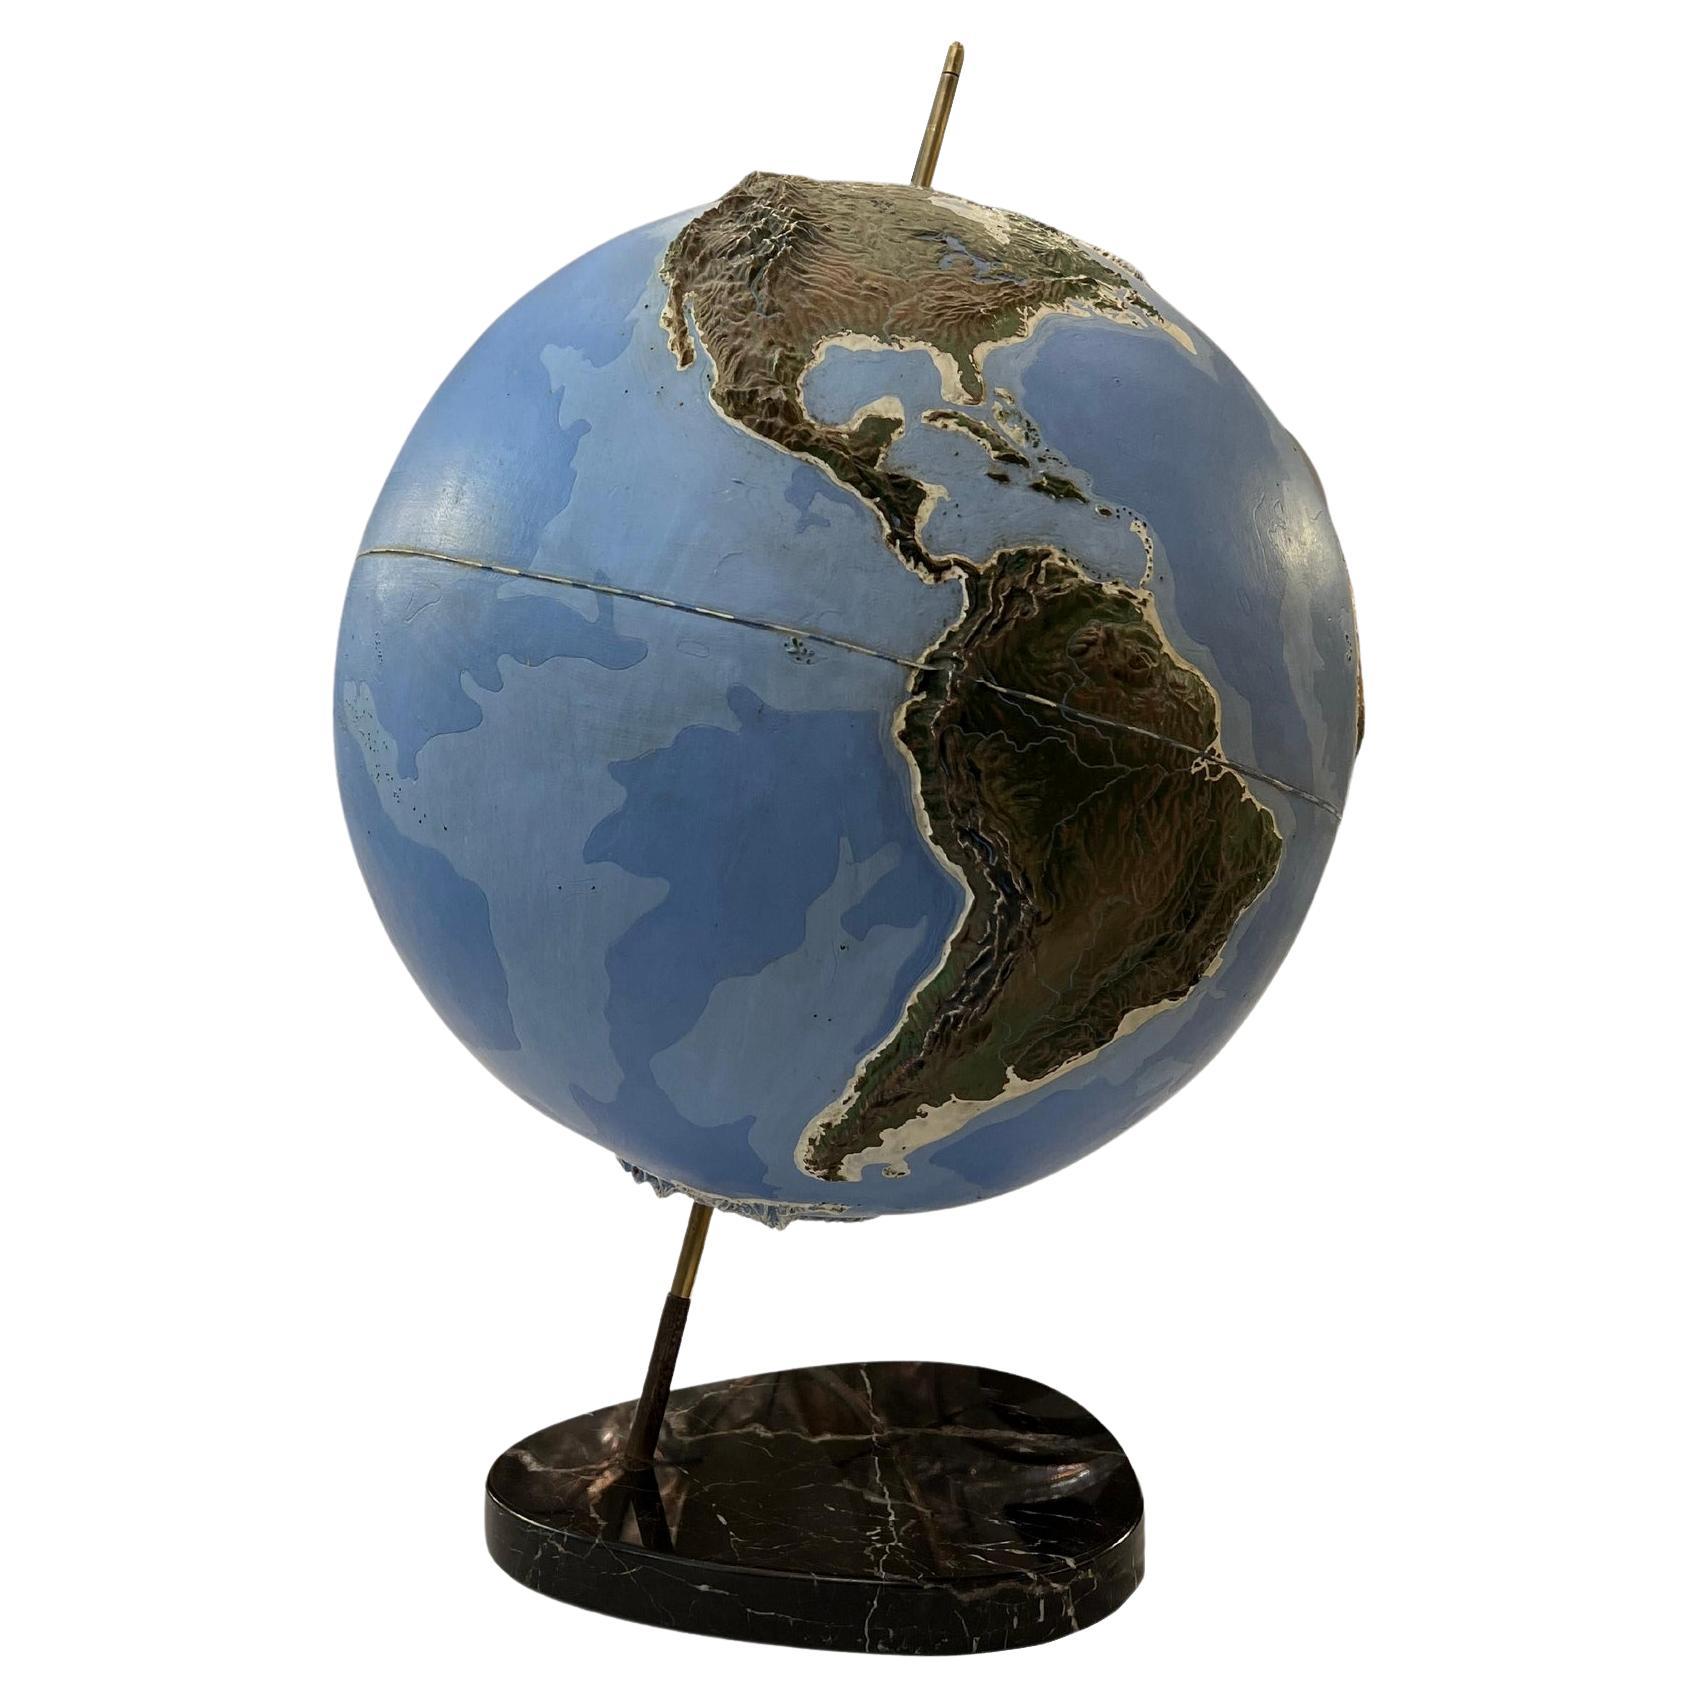 Important globe terrestre en relief représentant les océans et les continents.
Le globe est en plexiglas peint, fixé à la base en marbre par un axe en laiton. France vers 1950.